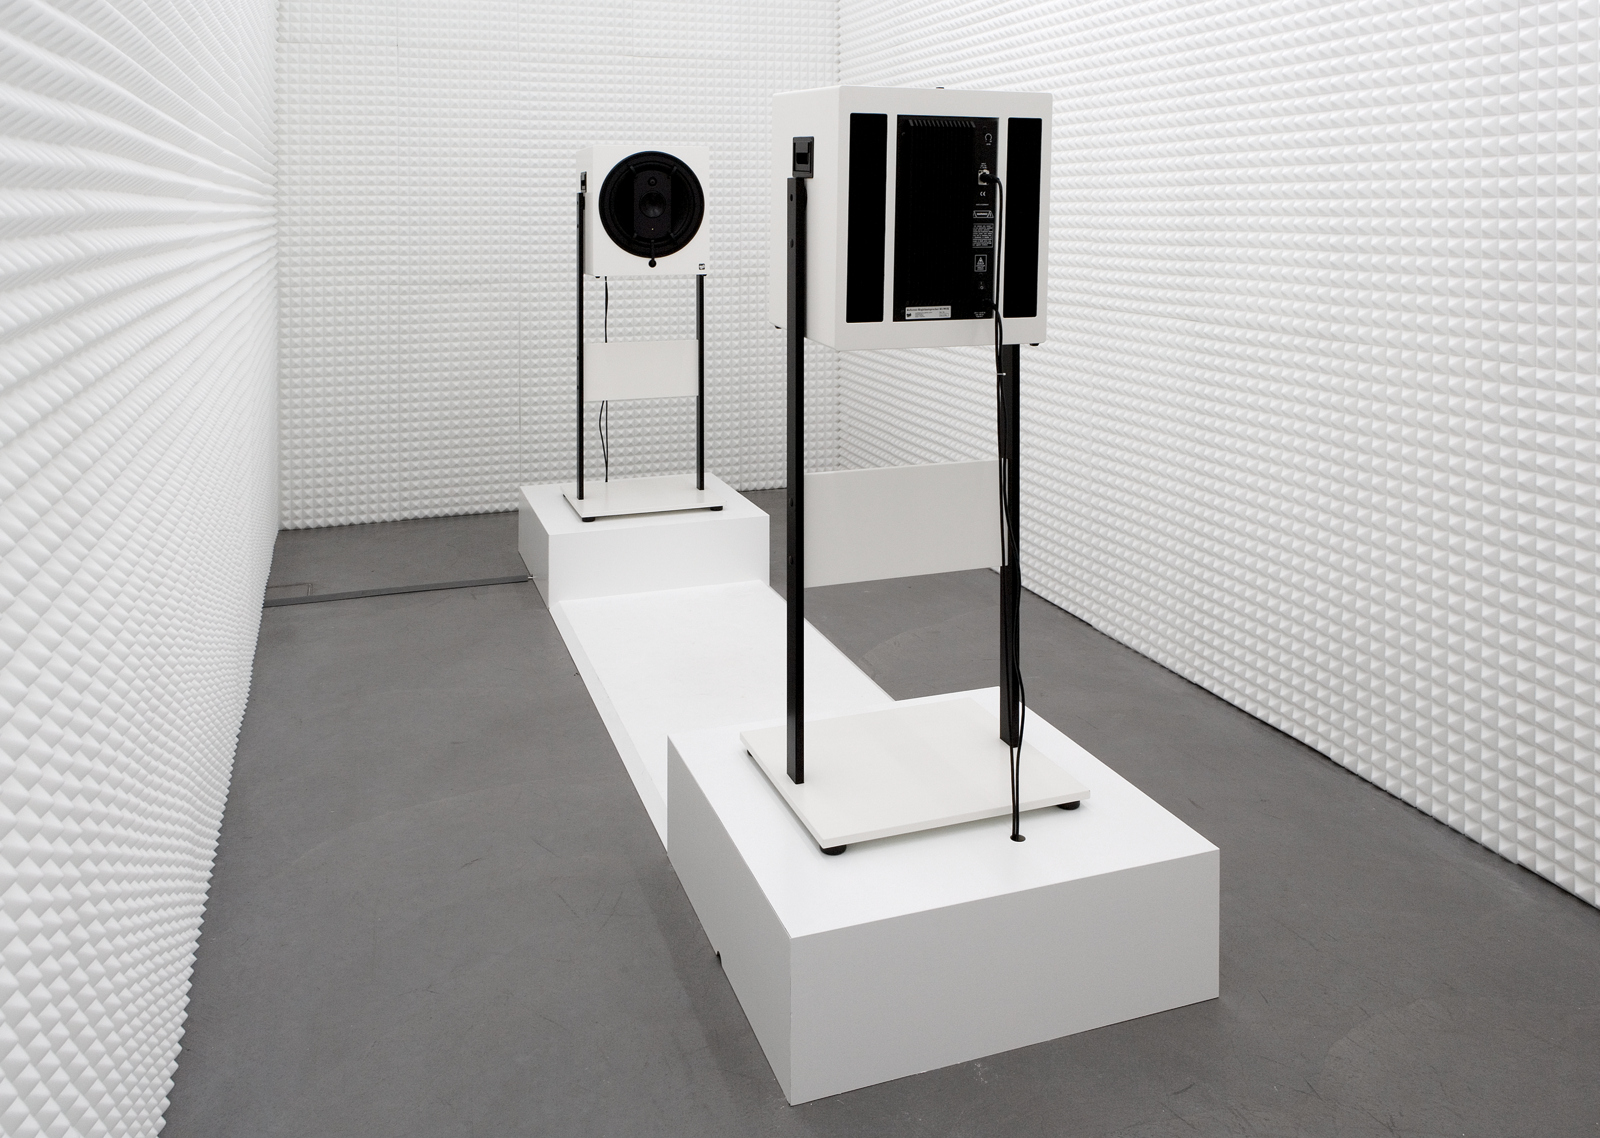 Carsten Nicolai / "static fades", exhibition view, Haus Konstruktiv, Zürich  / 2009